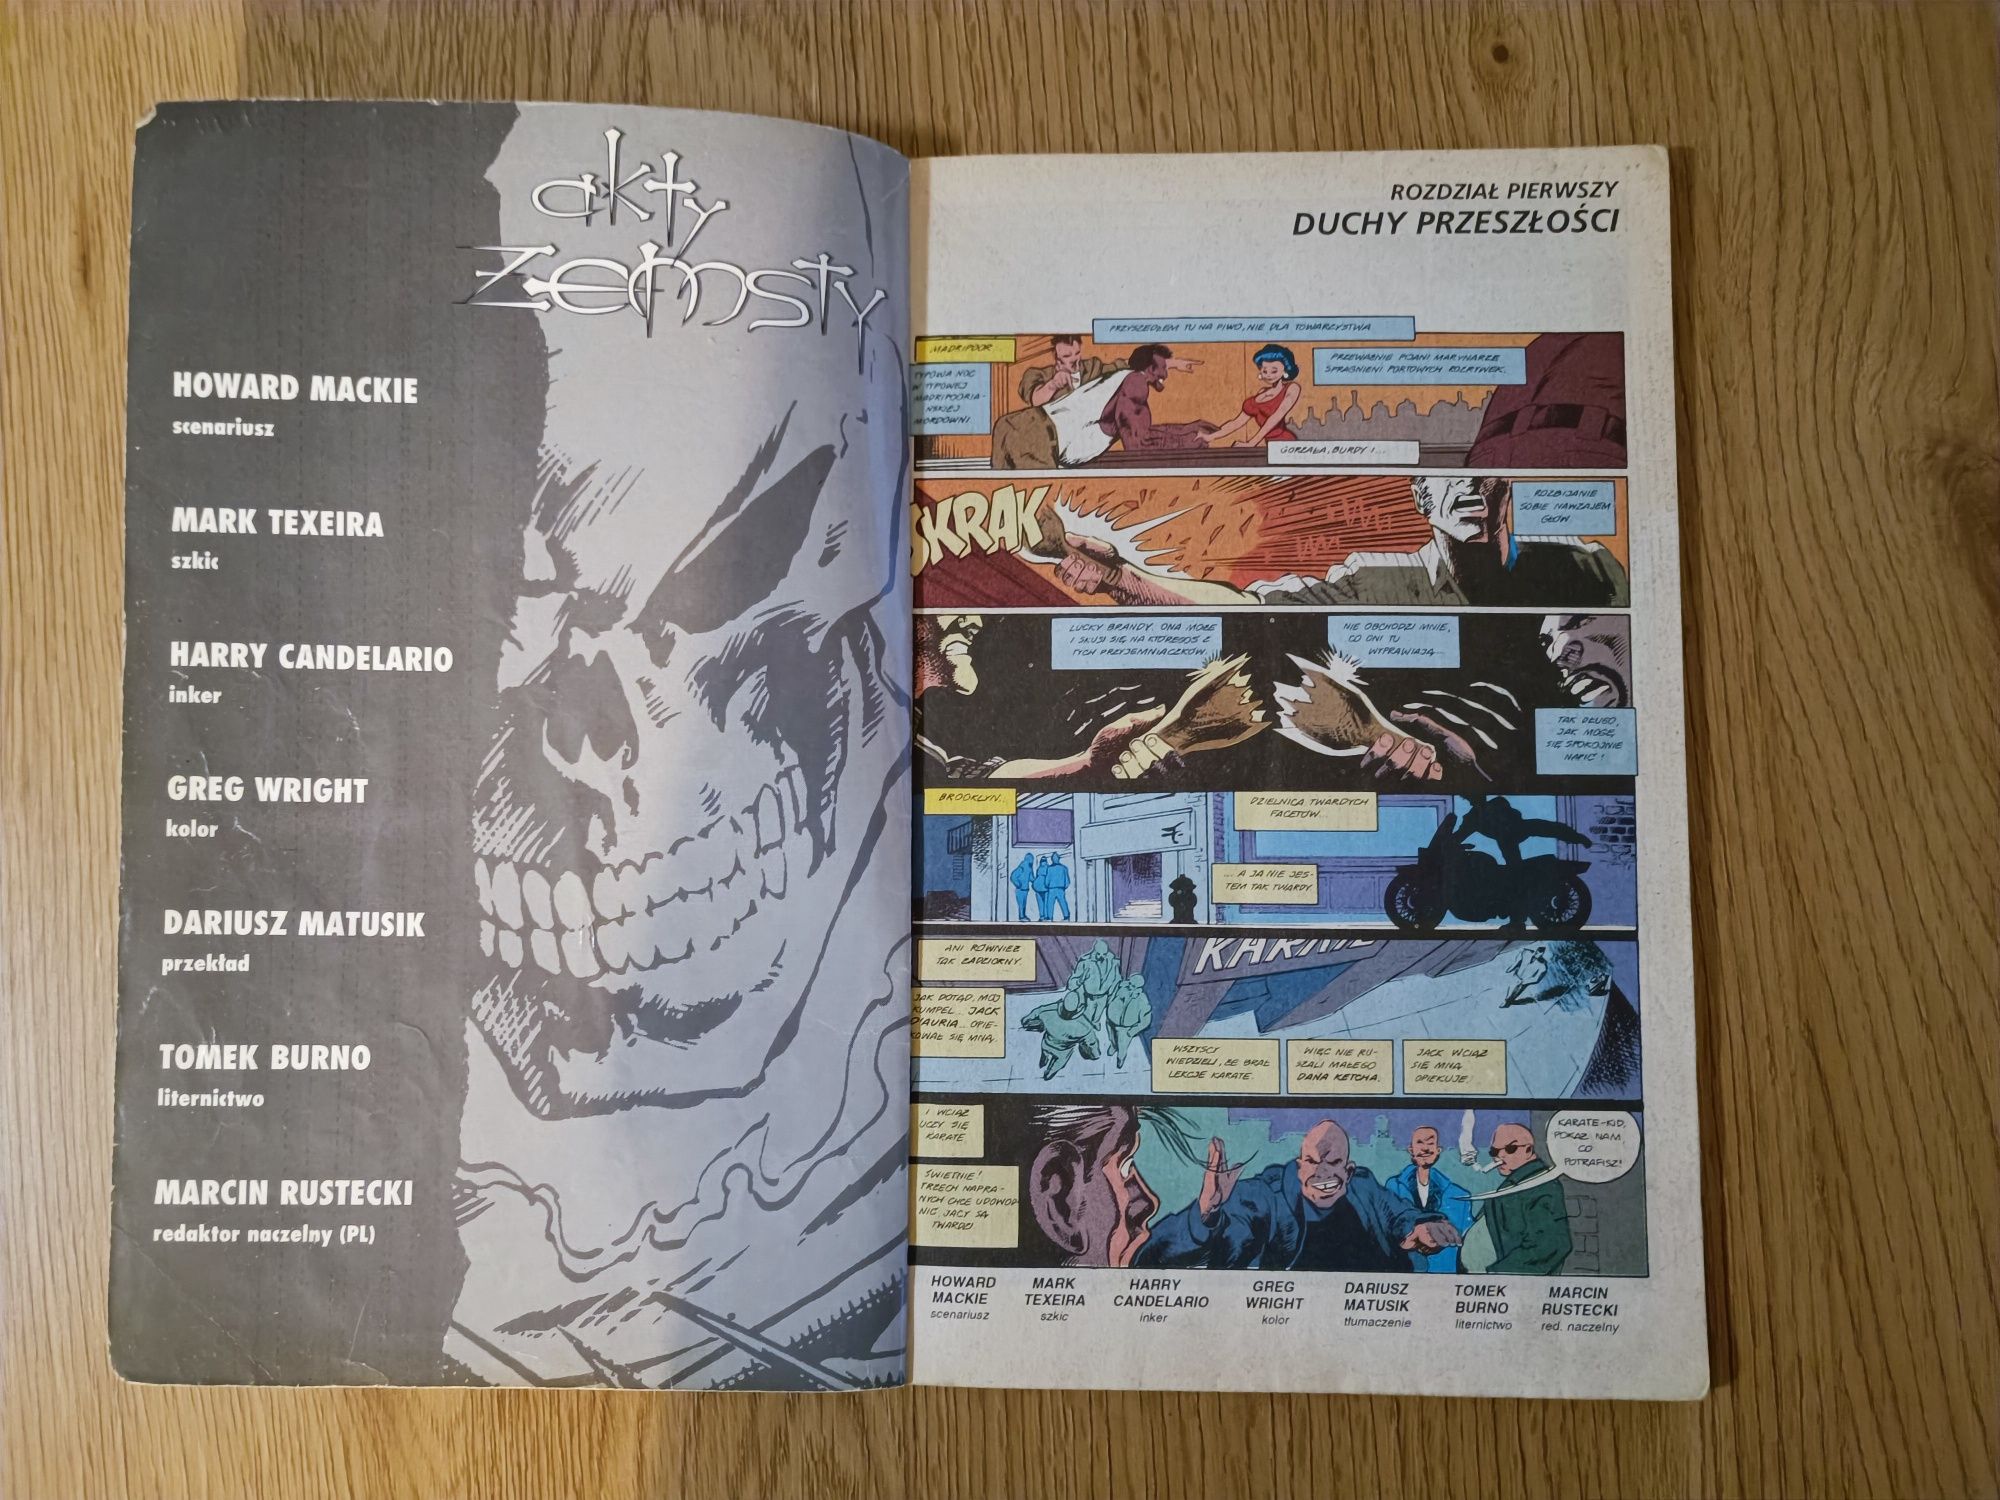 Wydanie Specjalne 4/95 - Wolverine Ghost Rider - Akty Zemsty